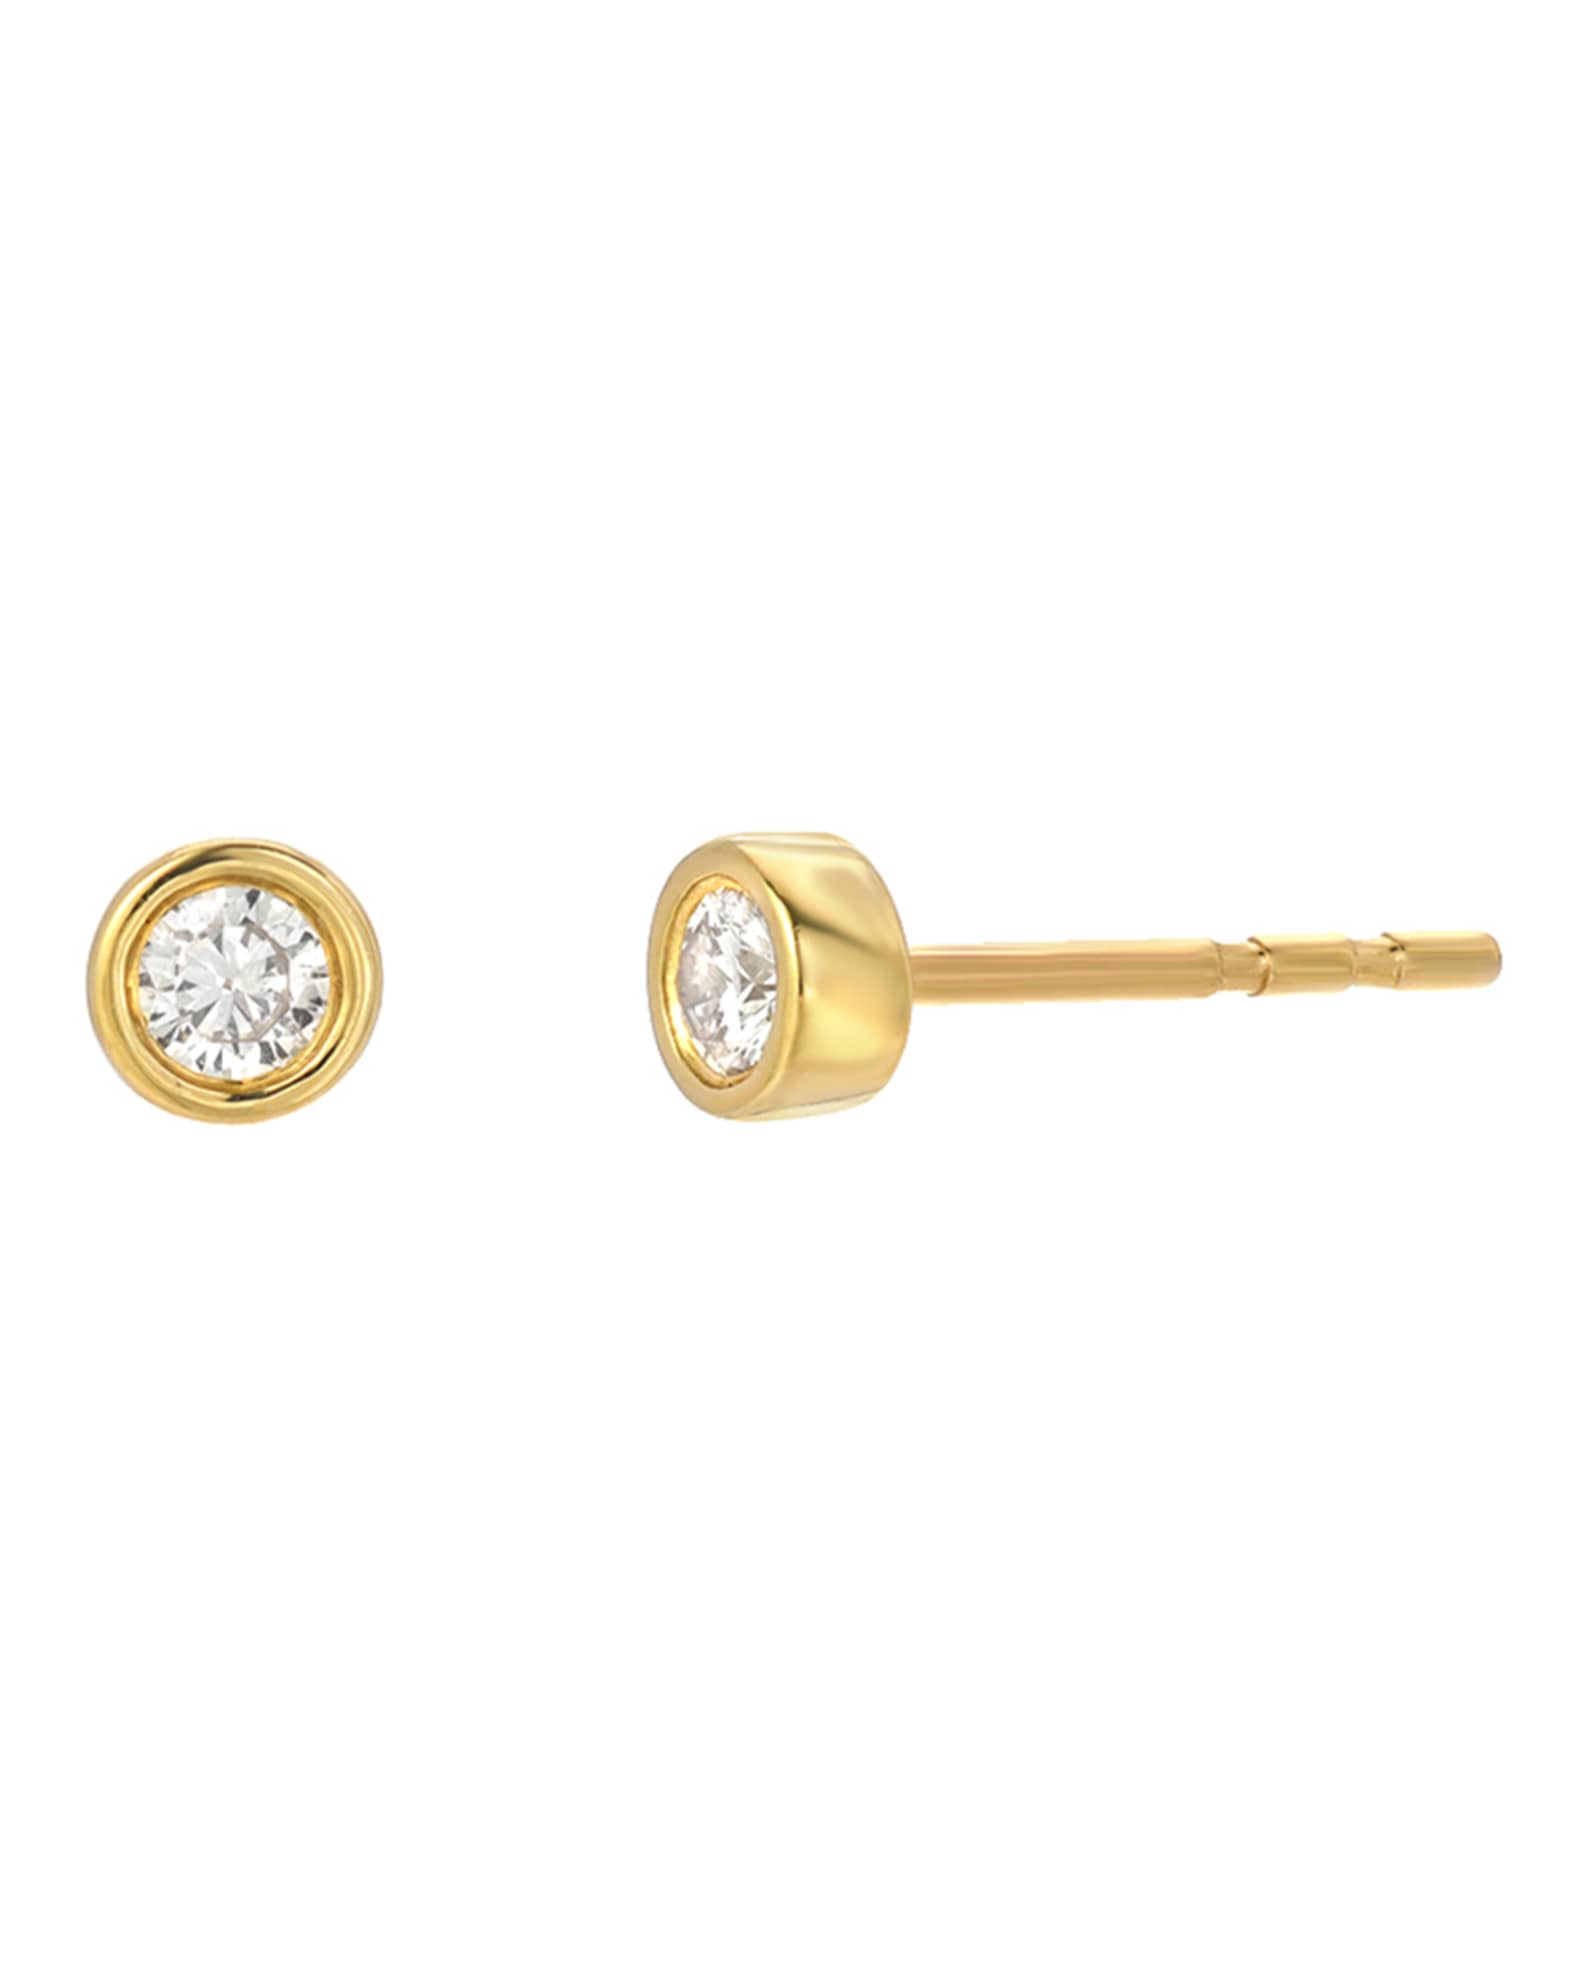 Zoe Lev Jewelry 14k Yellow Gold Bezel Diamond Stud Earrings | Neiman Marcus